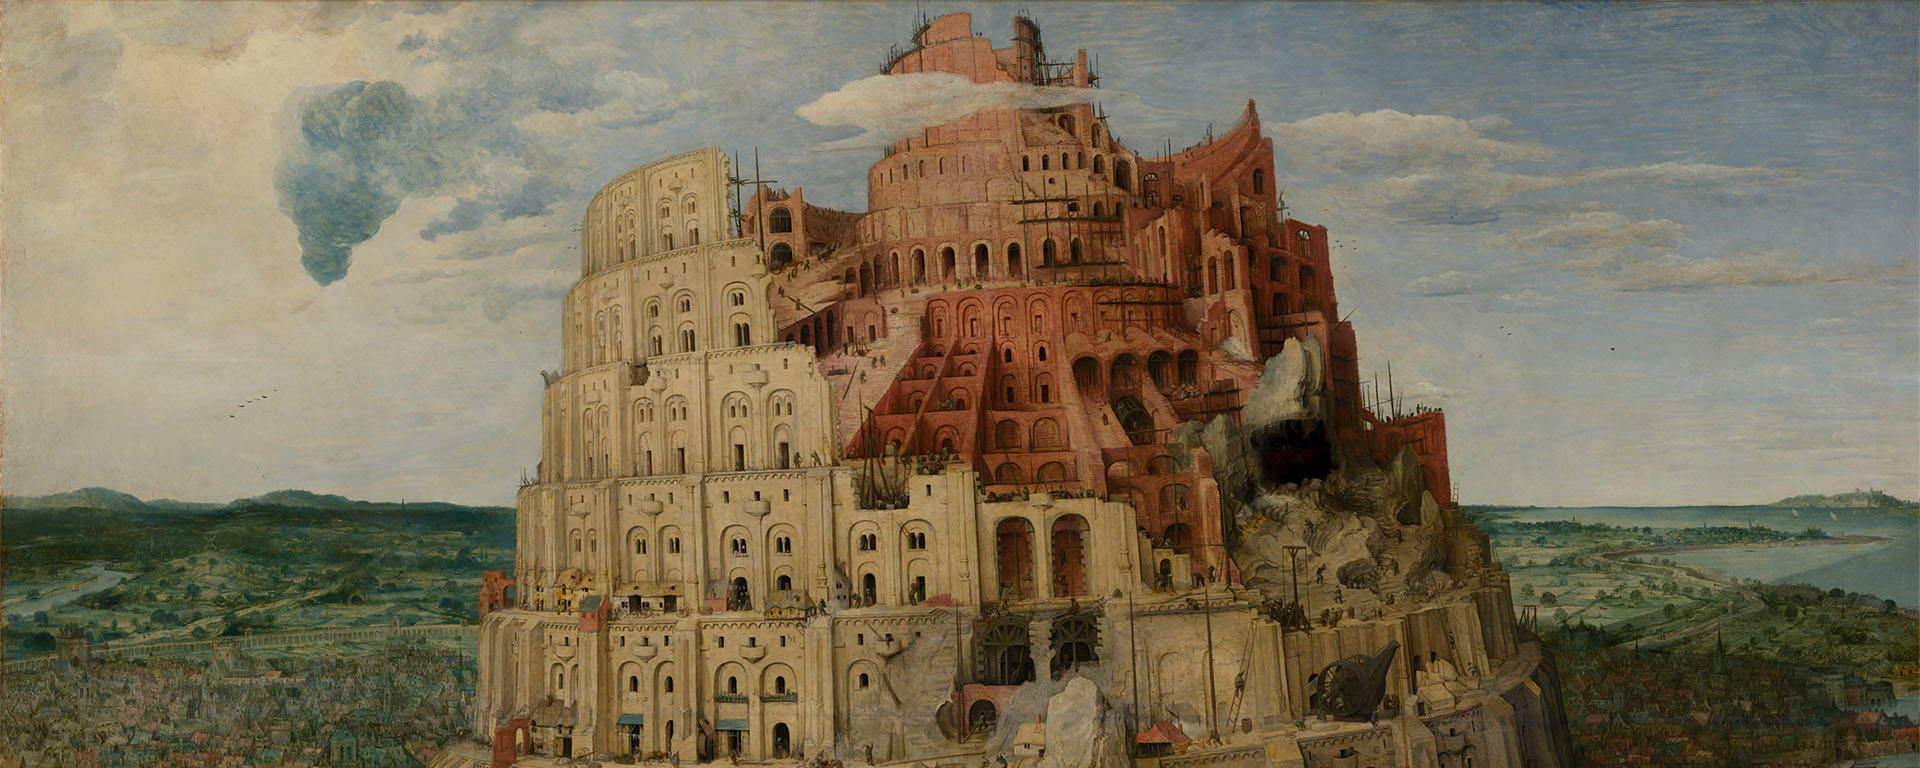 The Tower of Babel, Pieter Brueghel the Elder, 1563